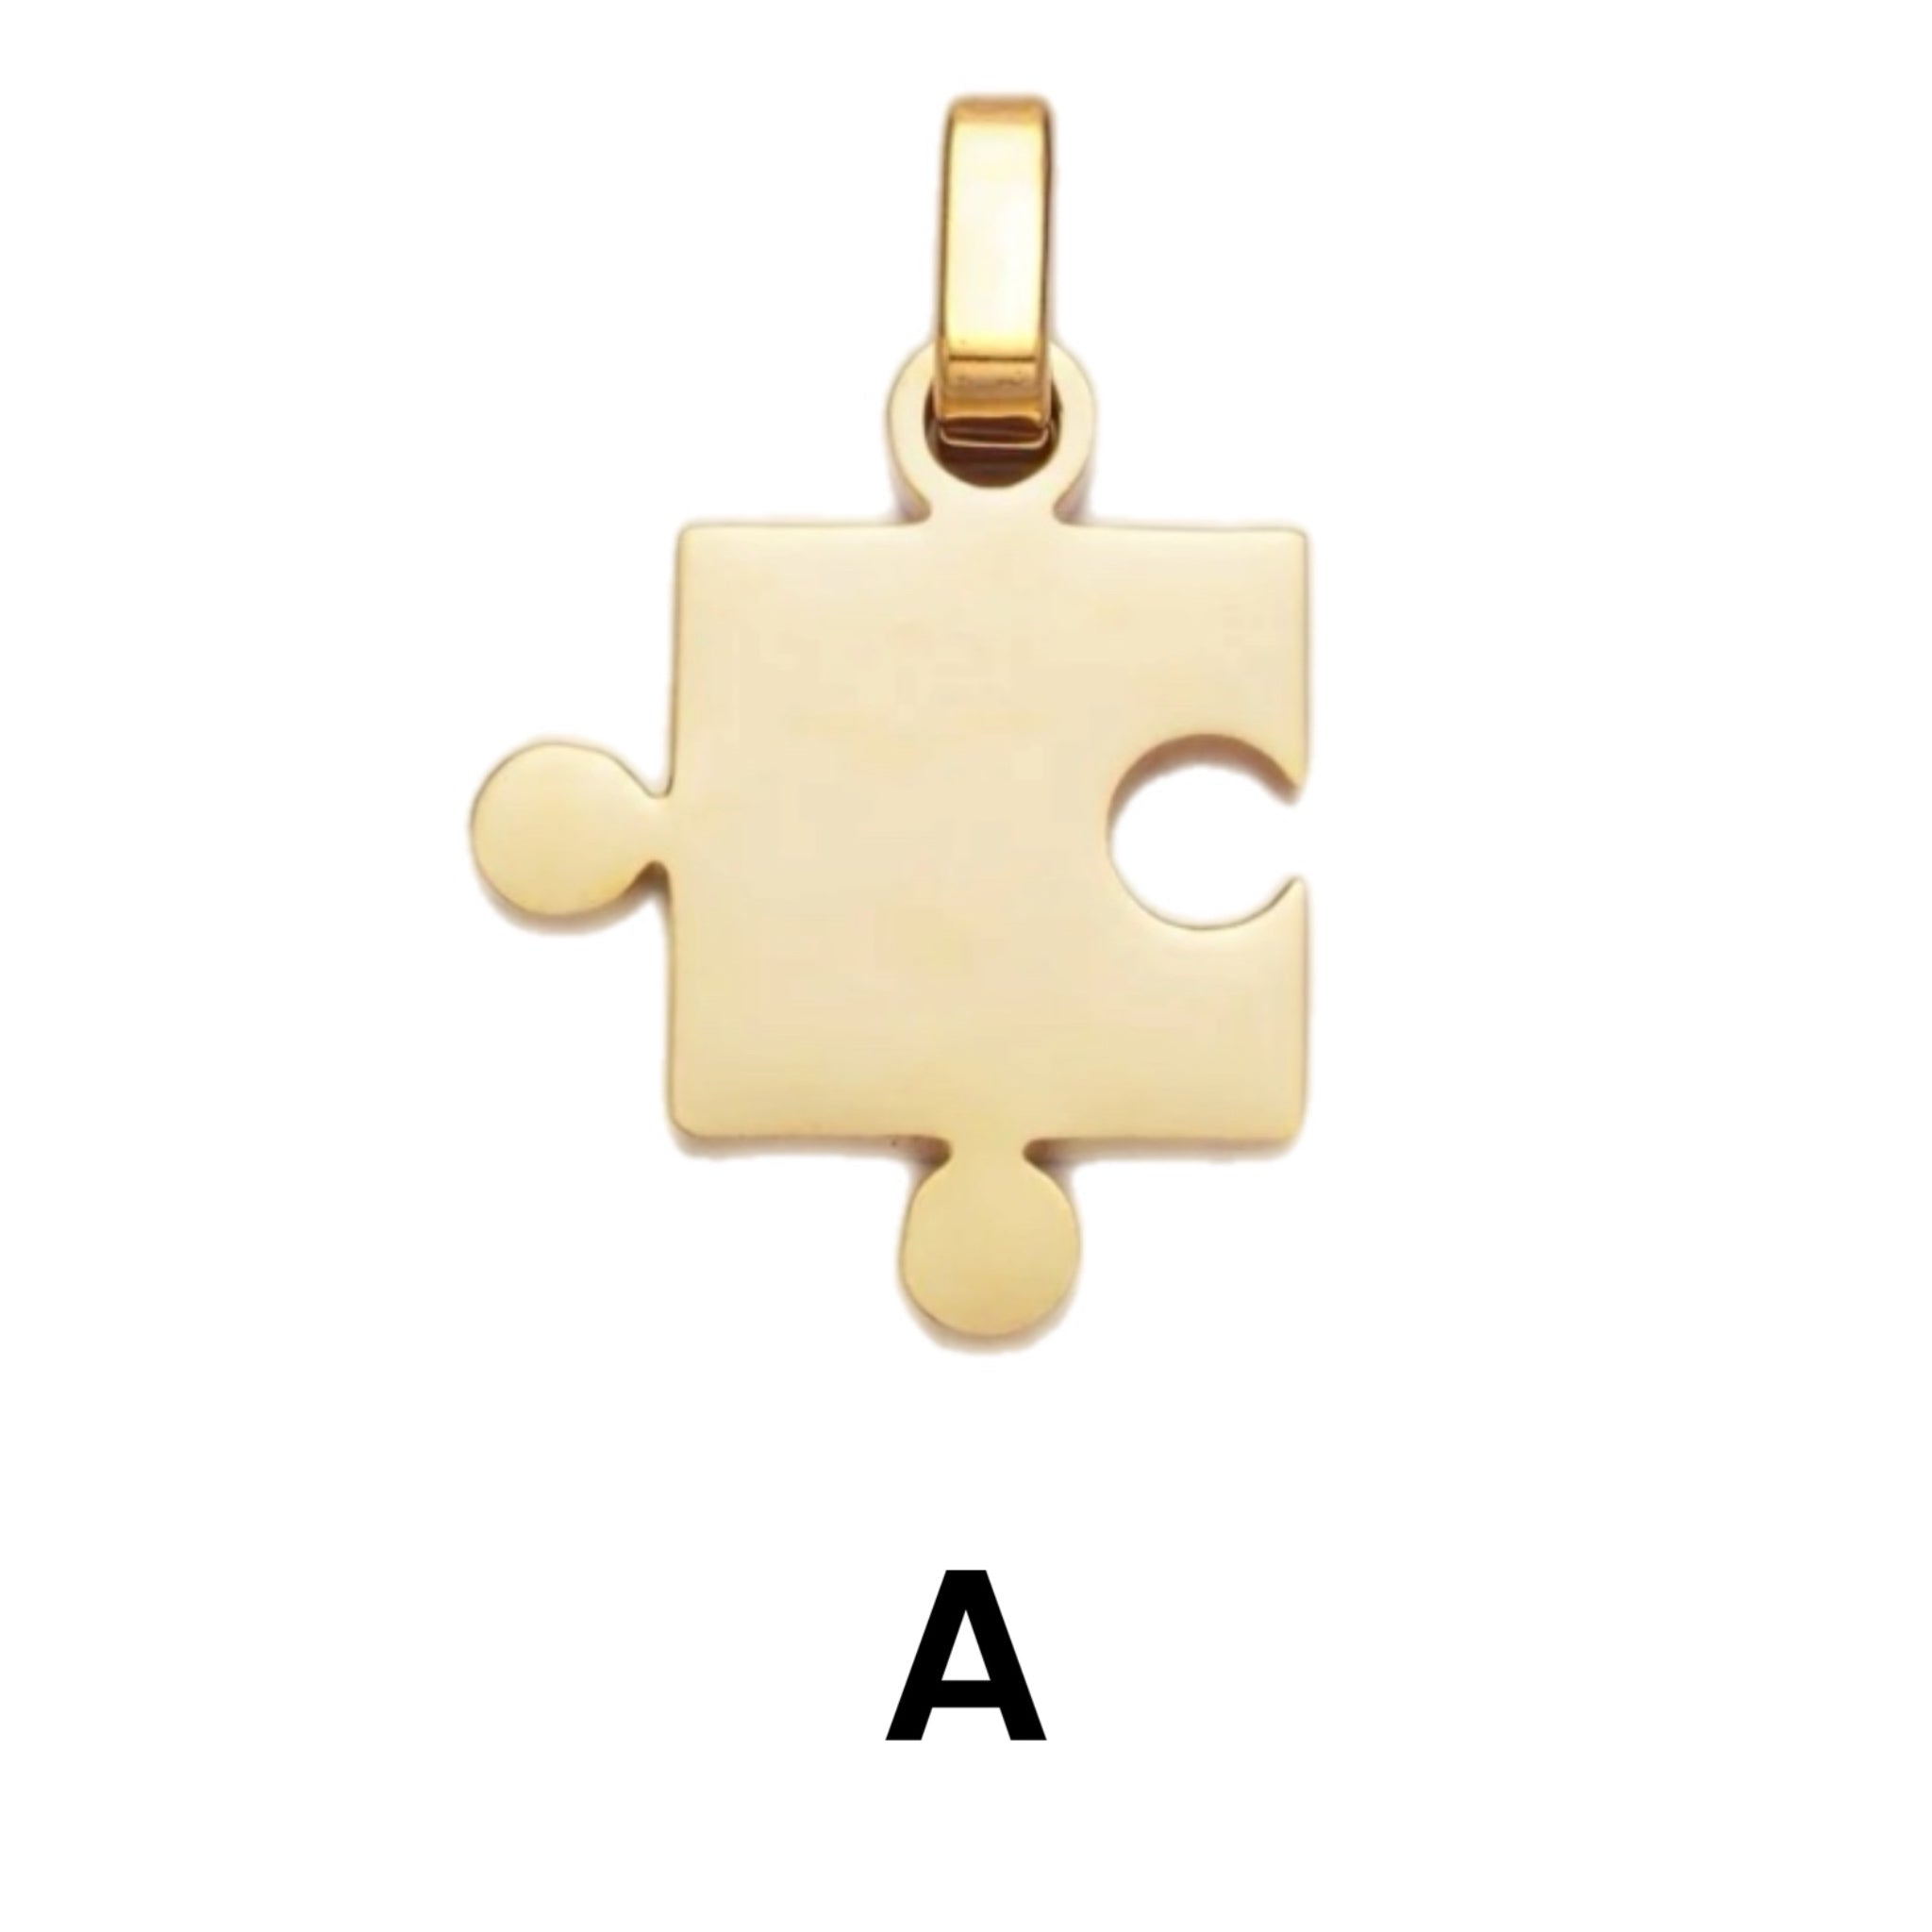 Lapis with Puzzle Piece Pendant